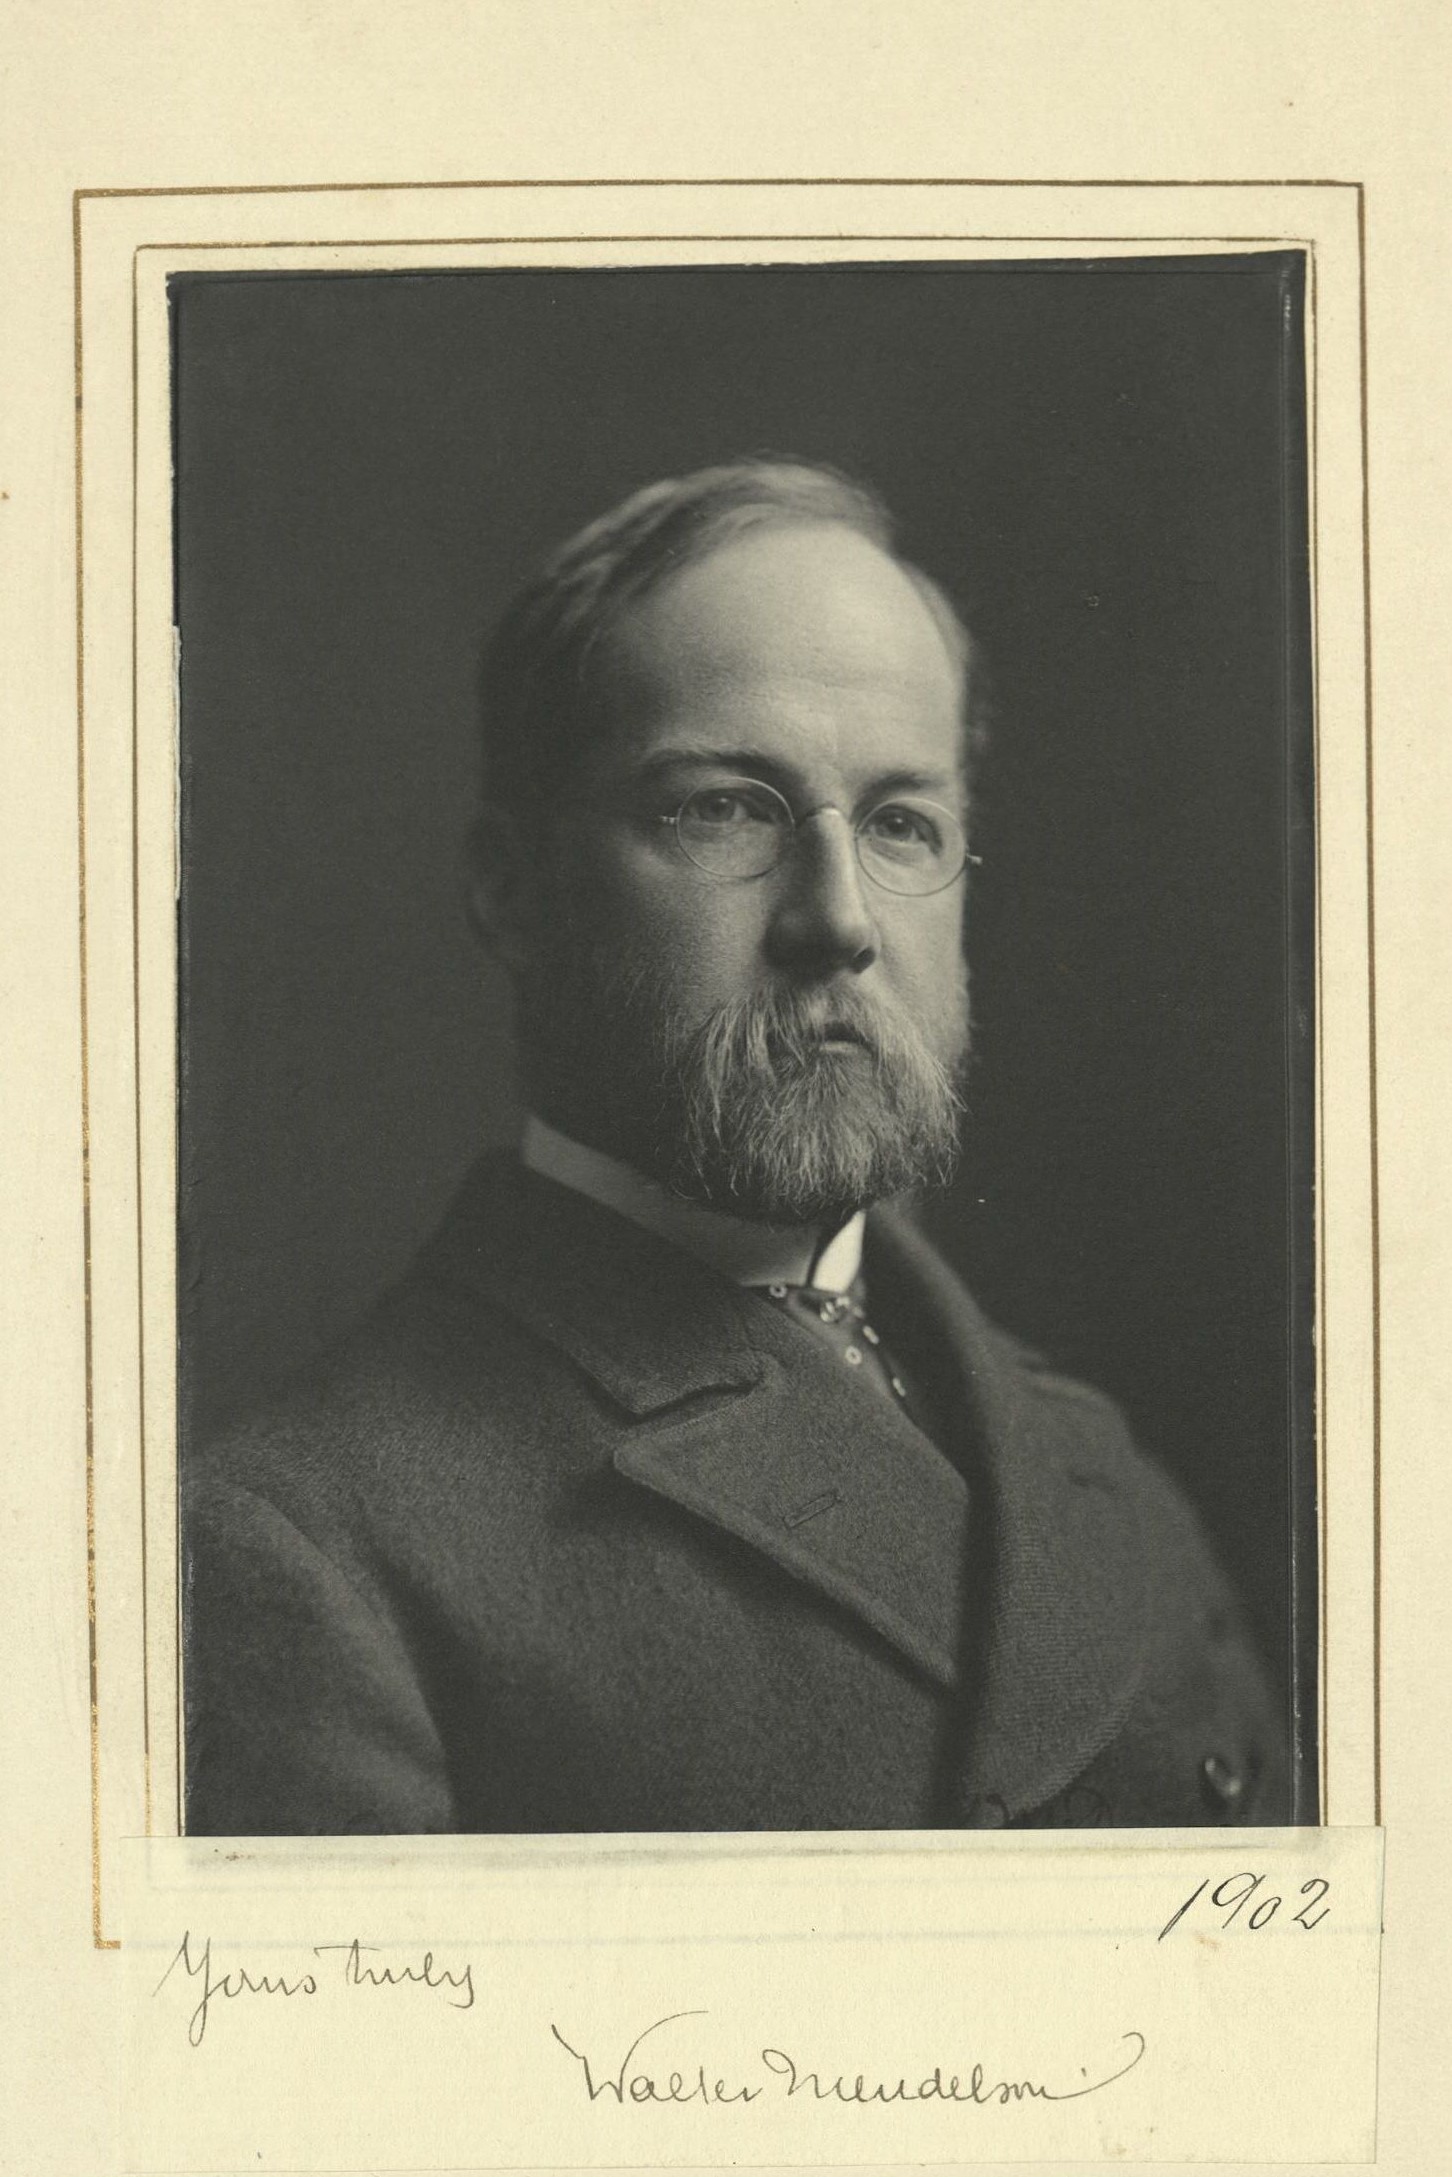 Member portrait of Walter Mendelson